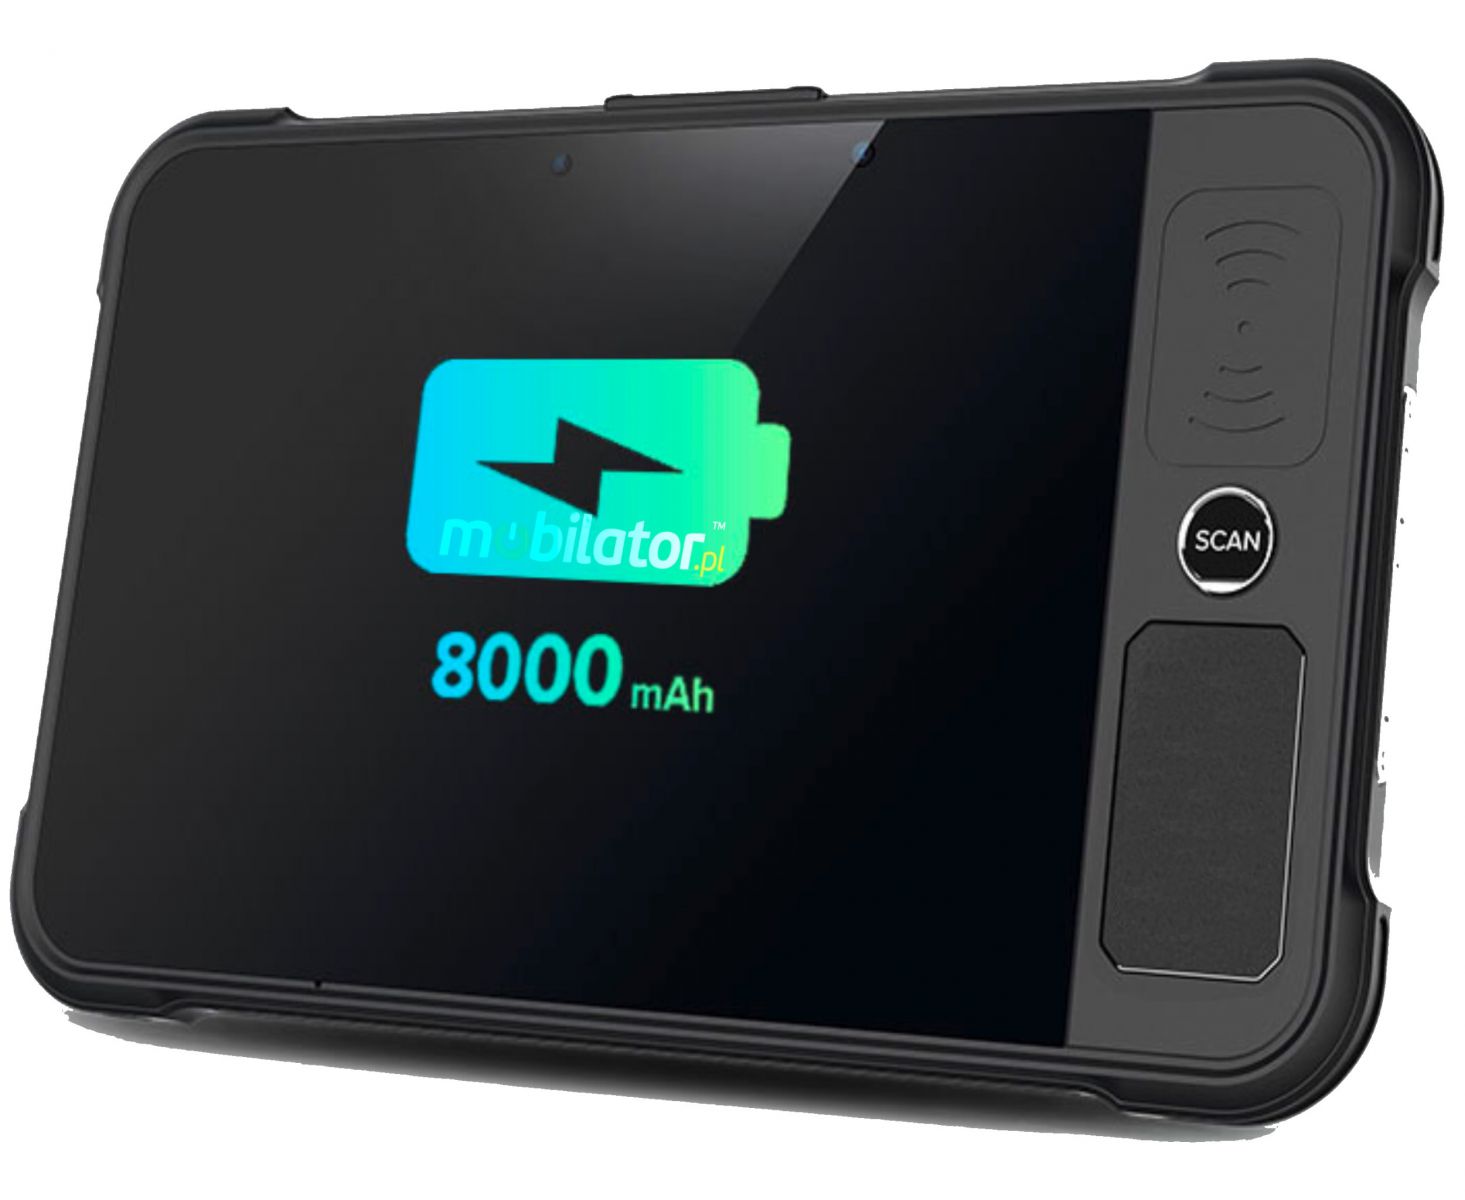 Chainway P80-PF energooszczdny wydajny tablet przemysowy 8000mAh